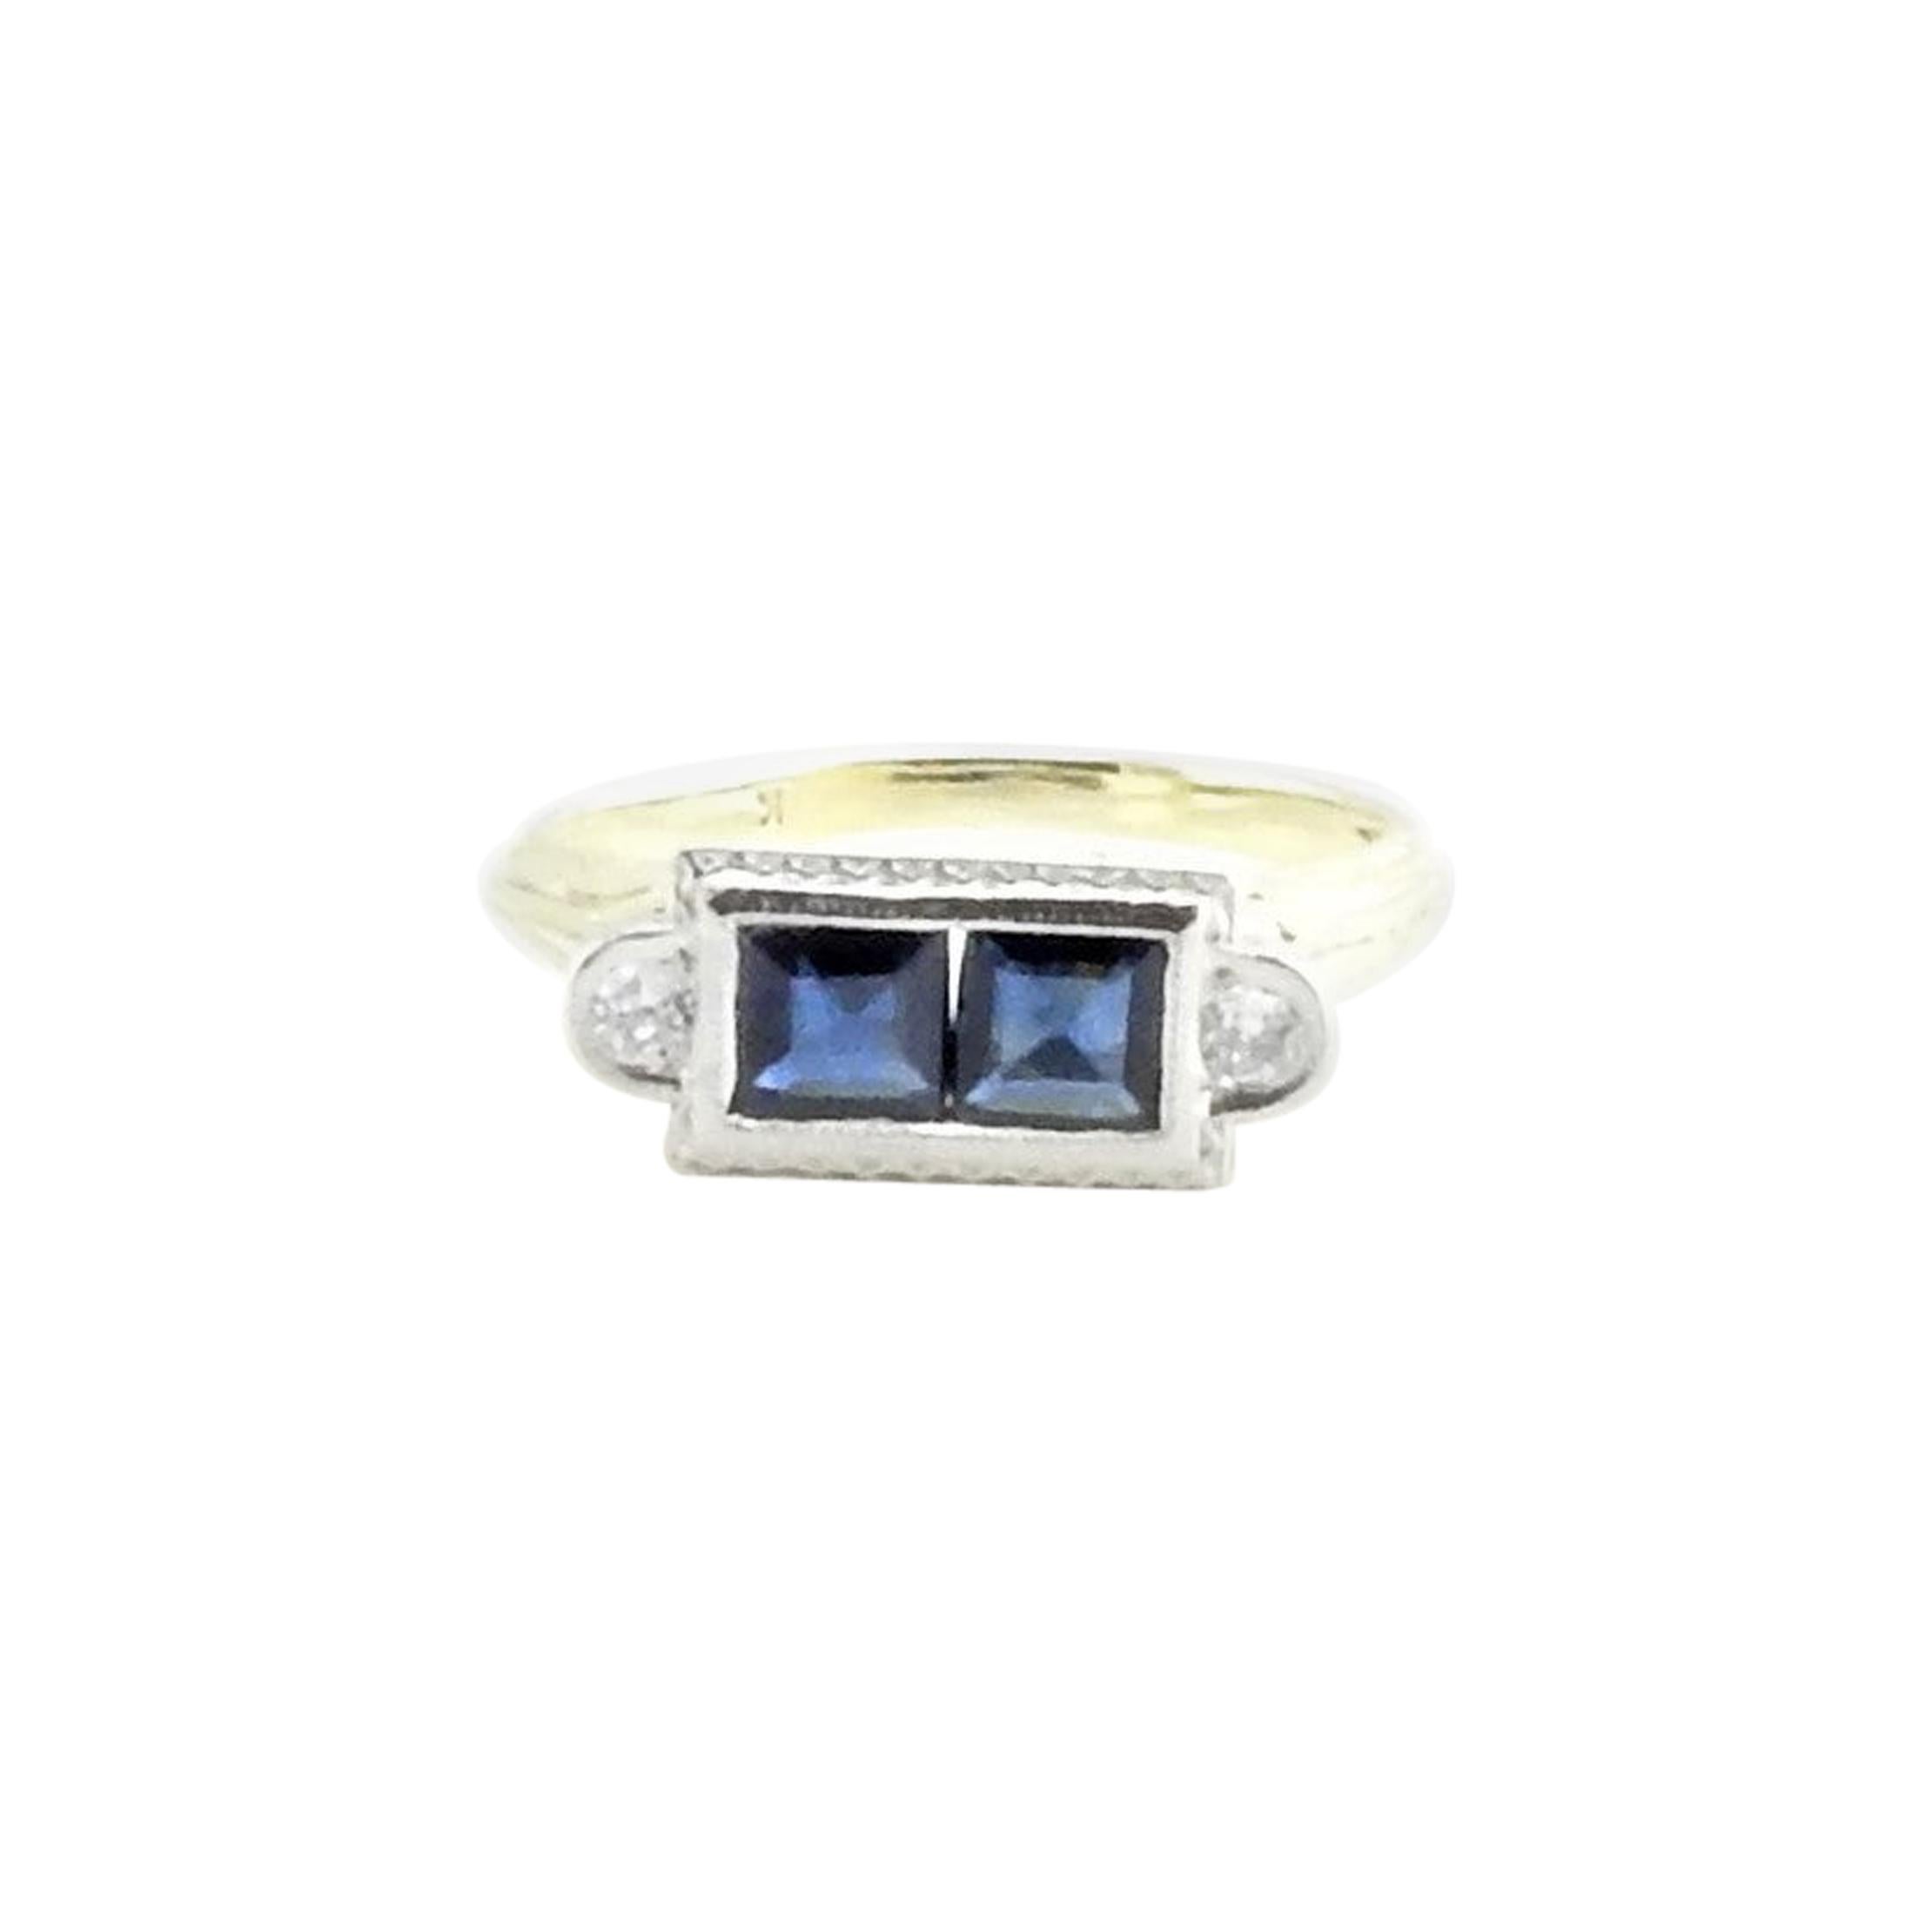 14 Karat White and Yellow Gold Genuine Sapphire and Diamond Ring